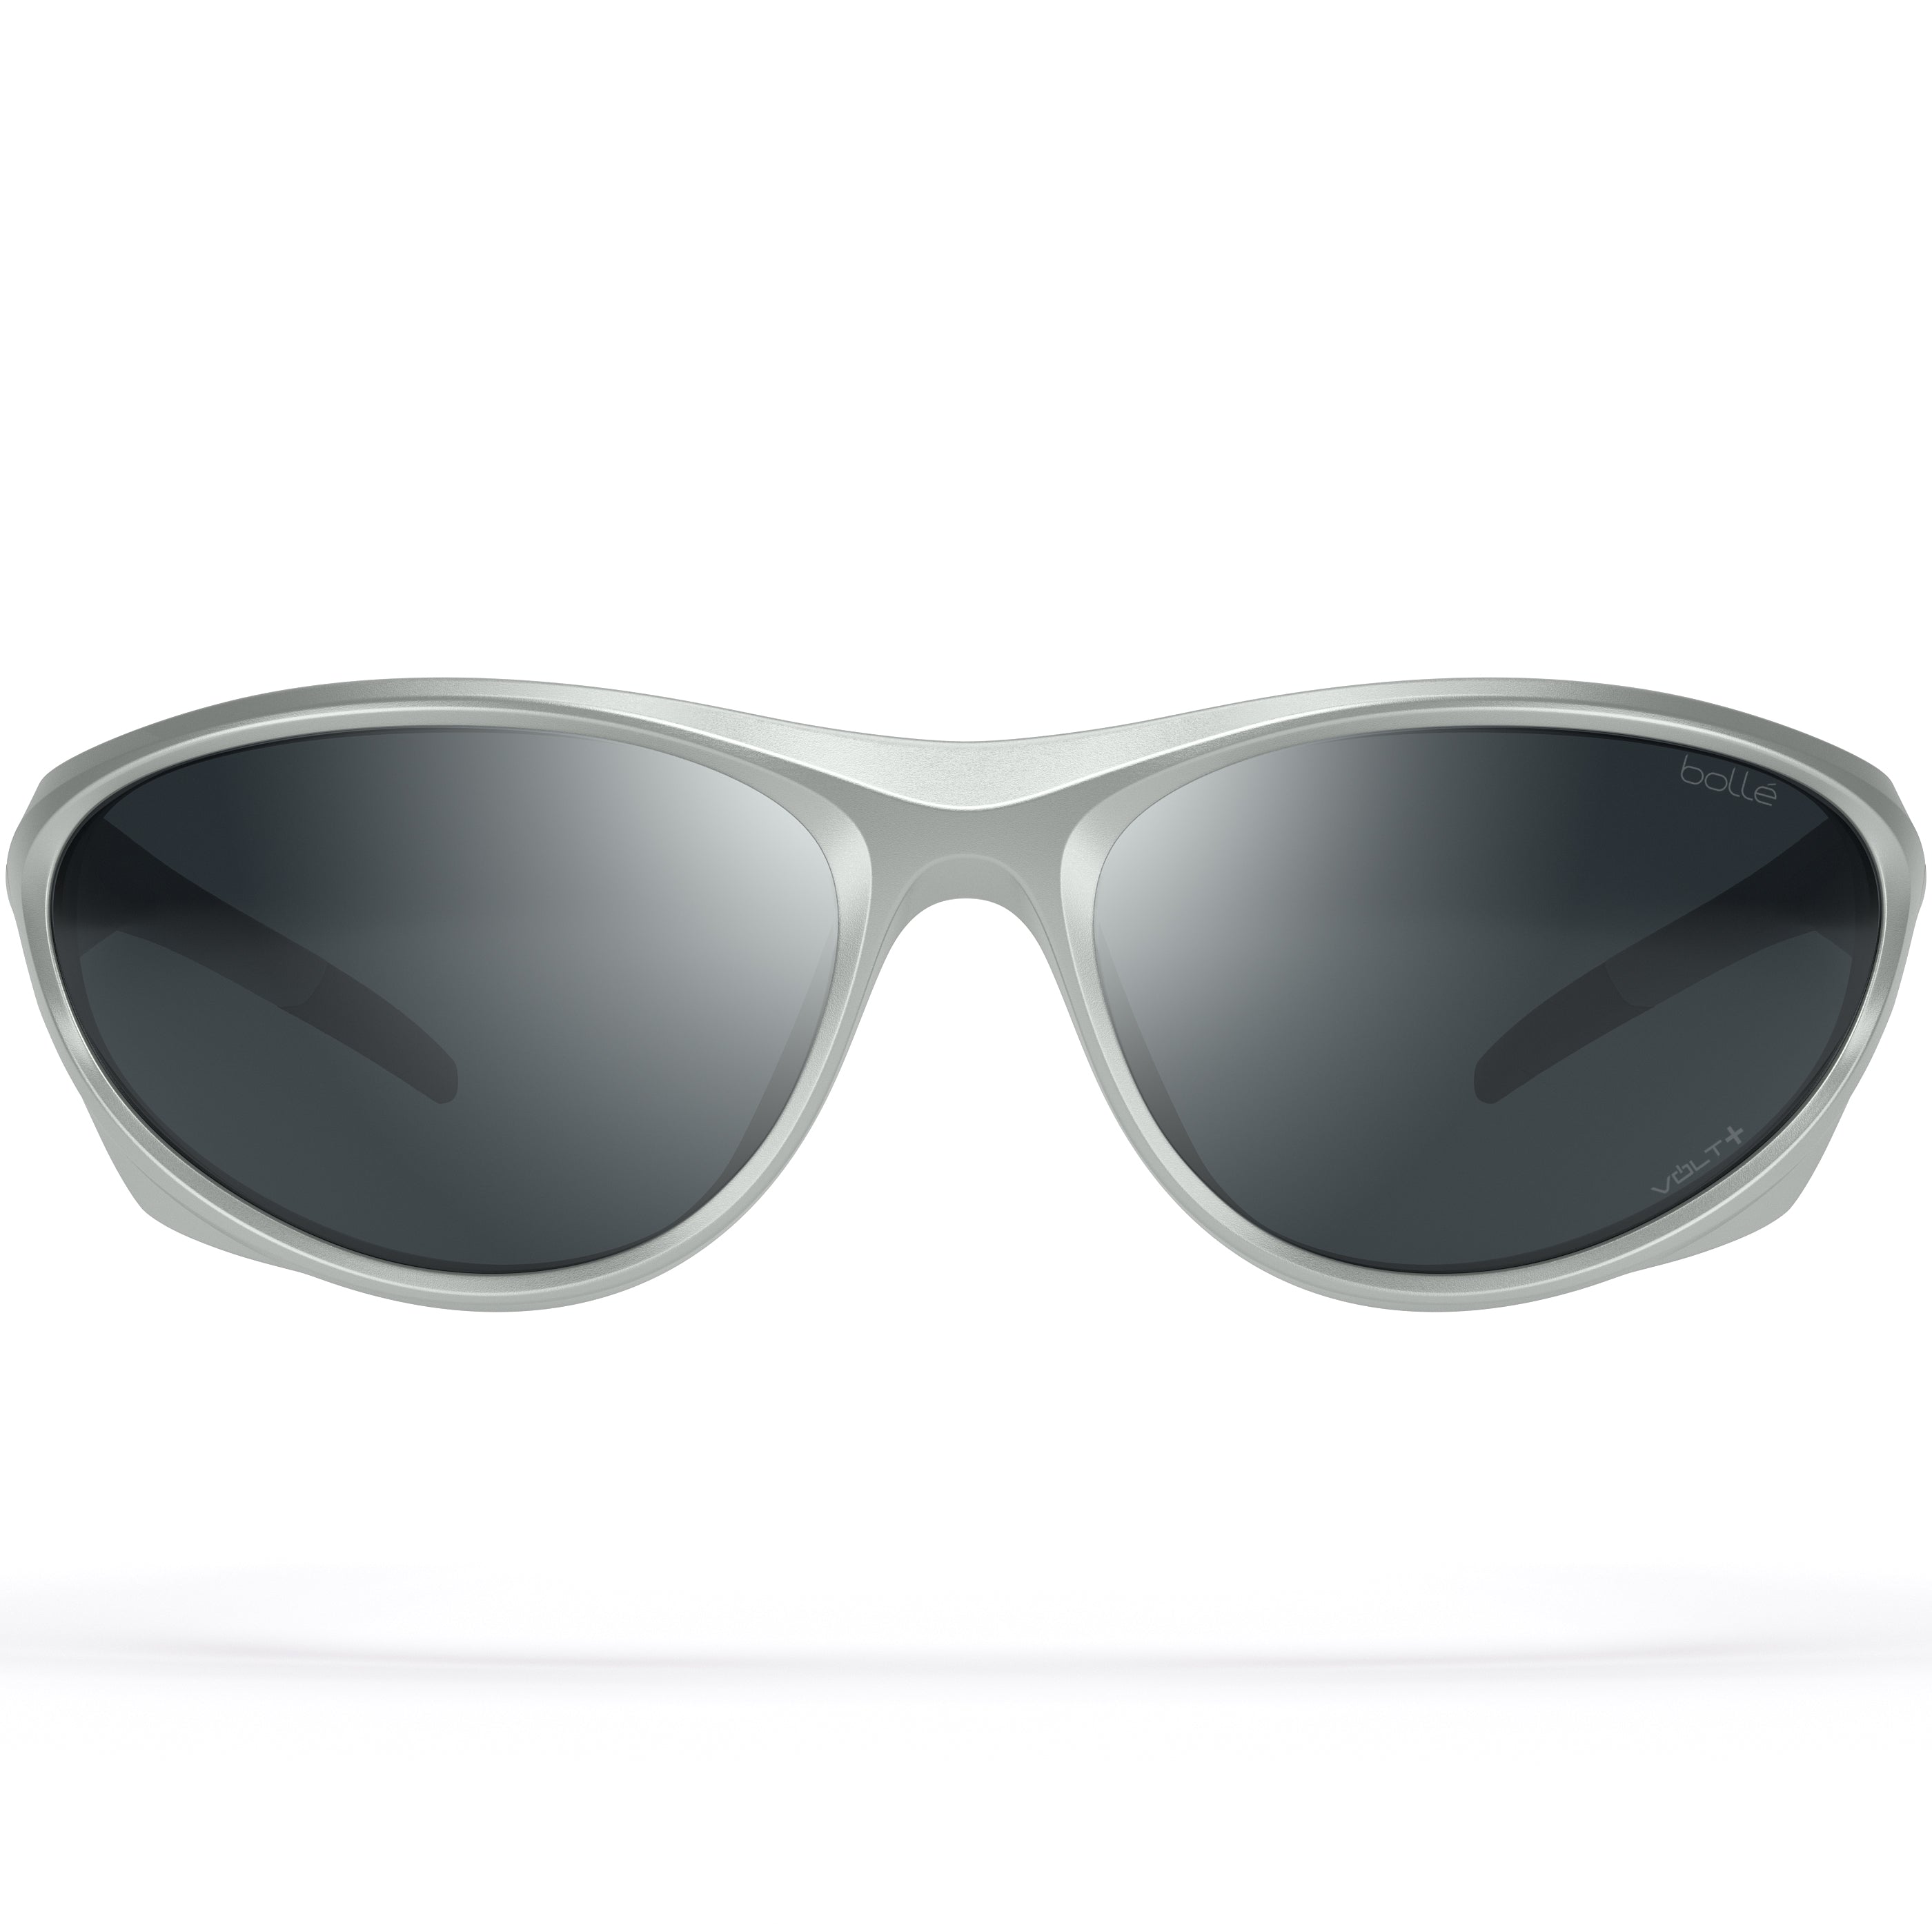 Bolle CHIMERA BS135006 Sunglasses - Silver Matte - Volt+ Cold White